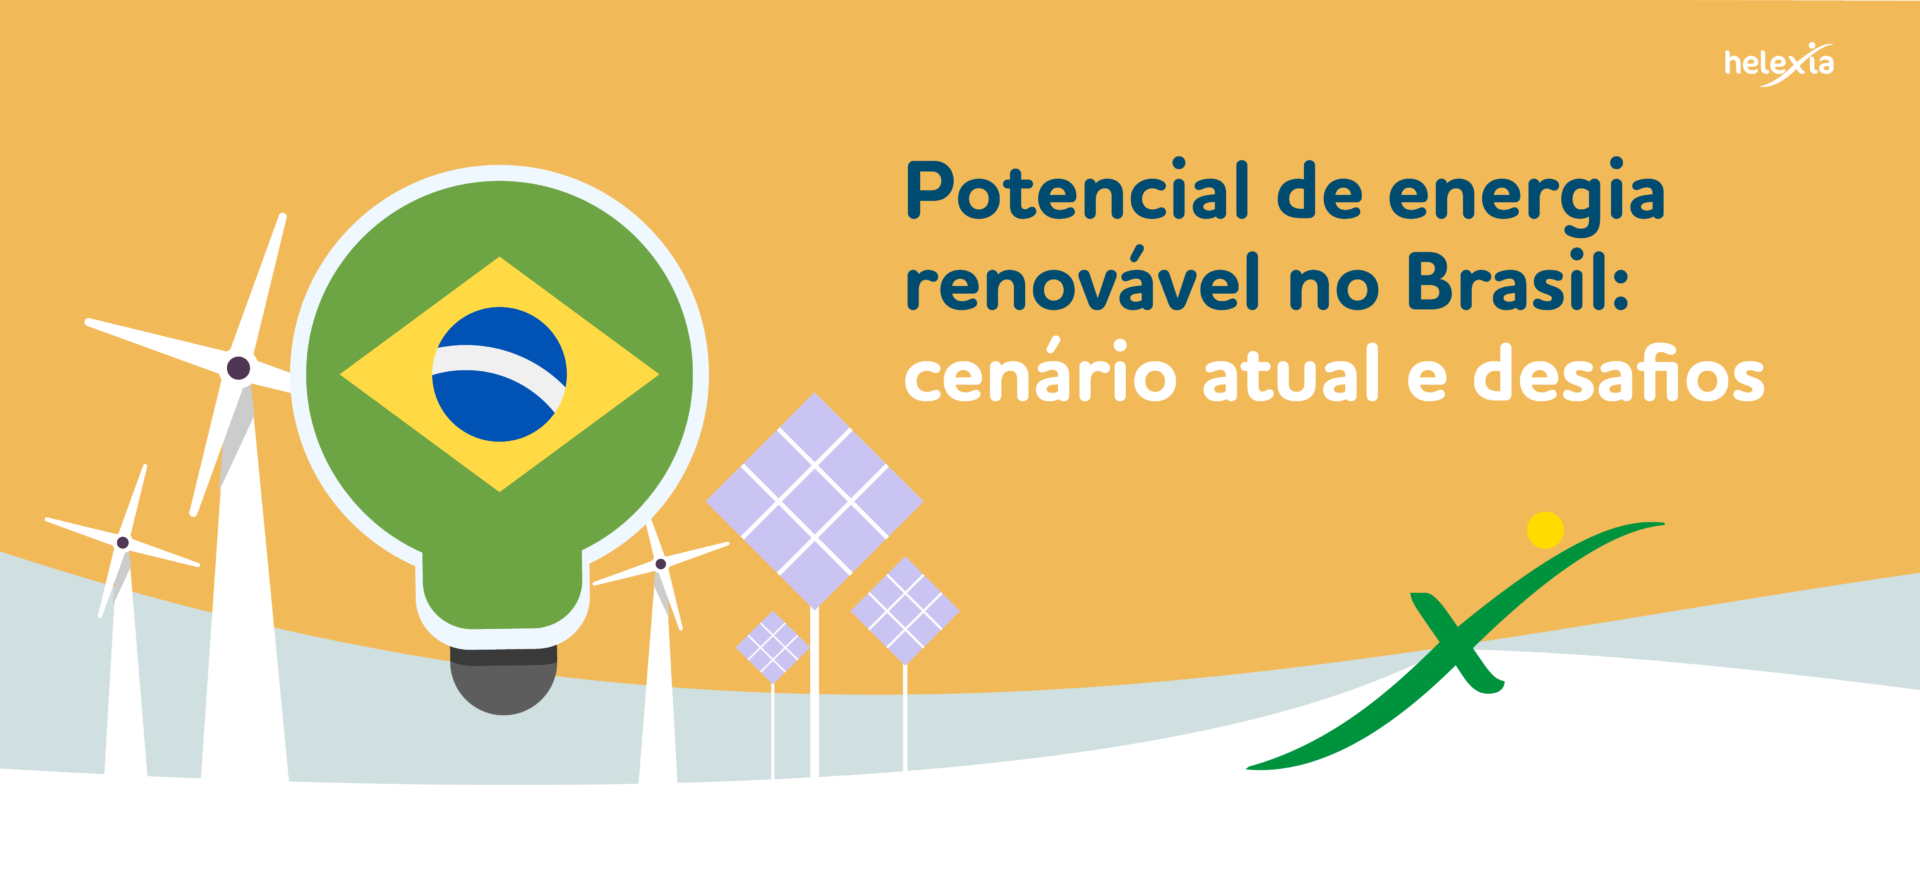 POTENCIAL DE ENERGIA RENOVÁVEL NO BRASIL: cenário atual e desafios